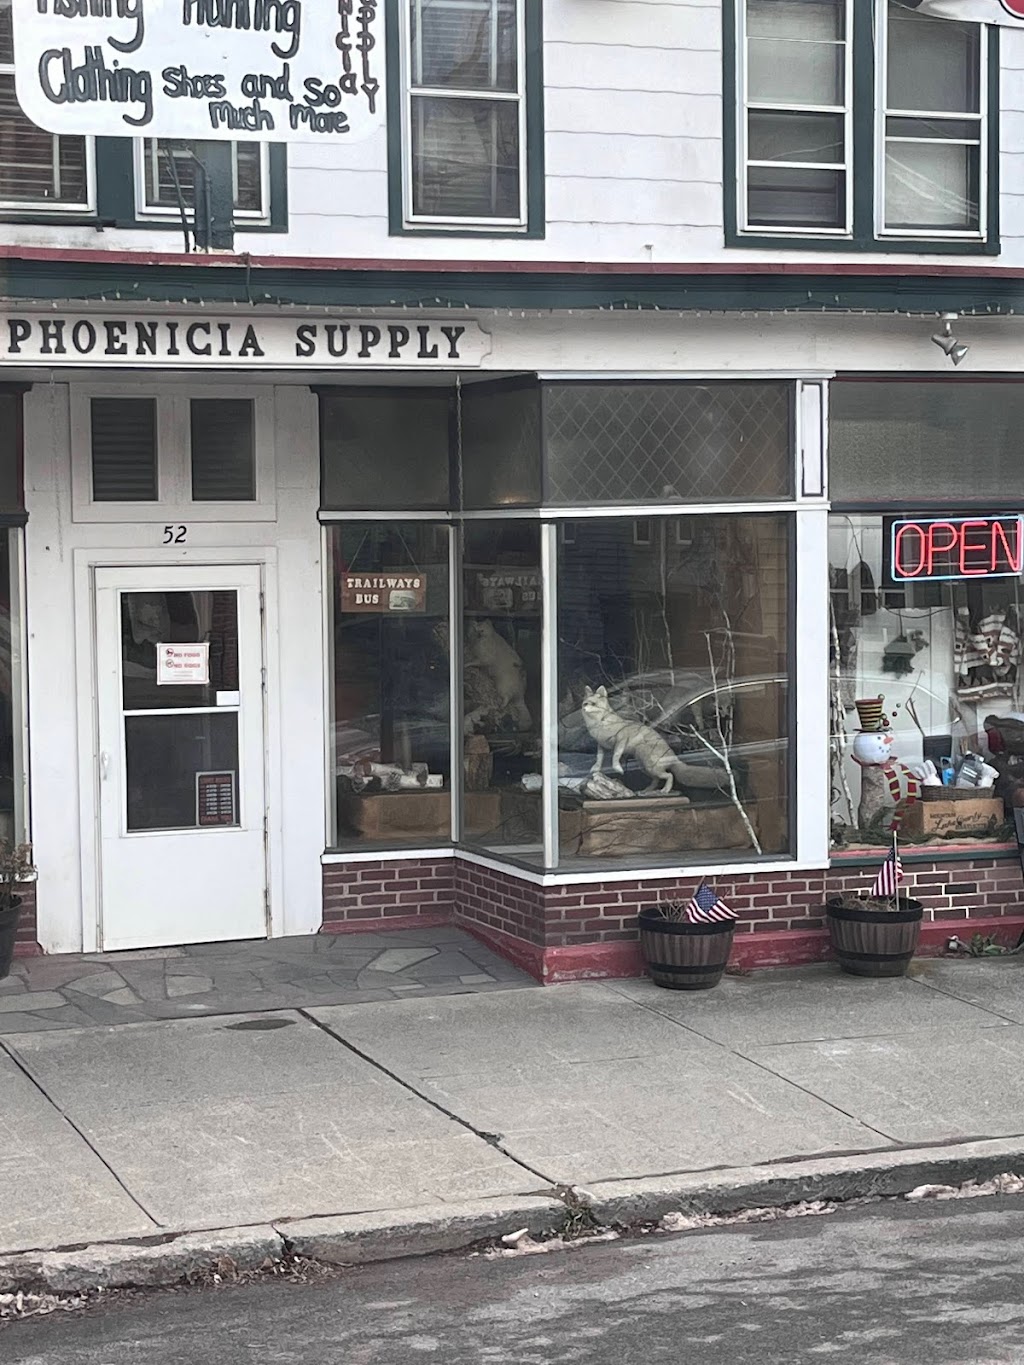 Phoenicia Supply | 52 Main St, Phoenicia, NY 12464 | Phone: (845) 688-7738